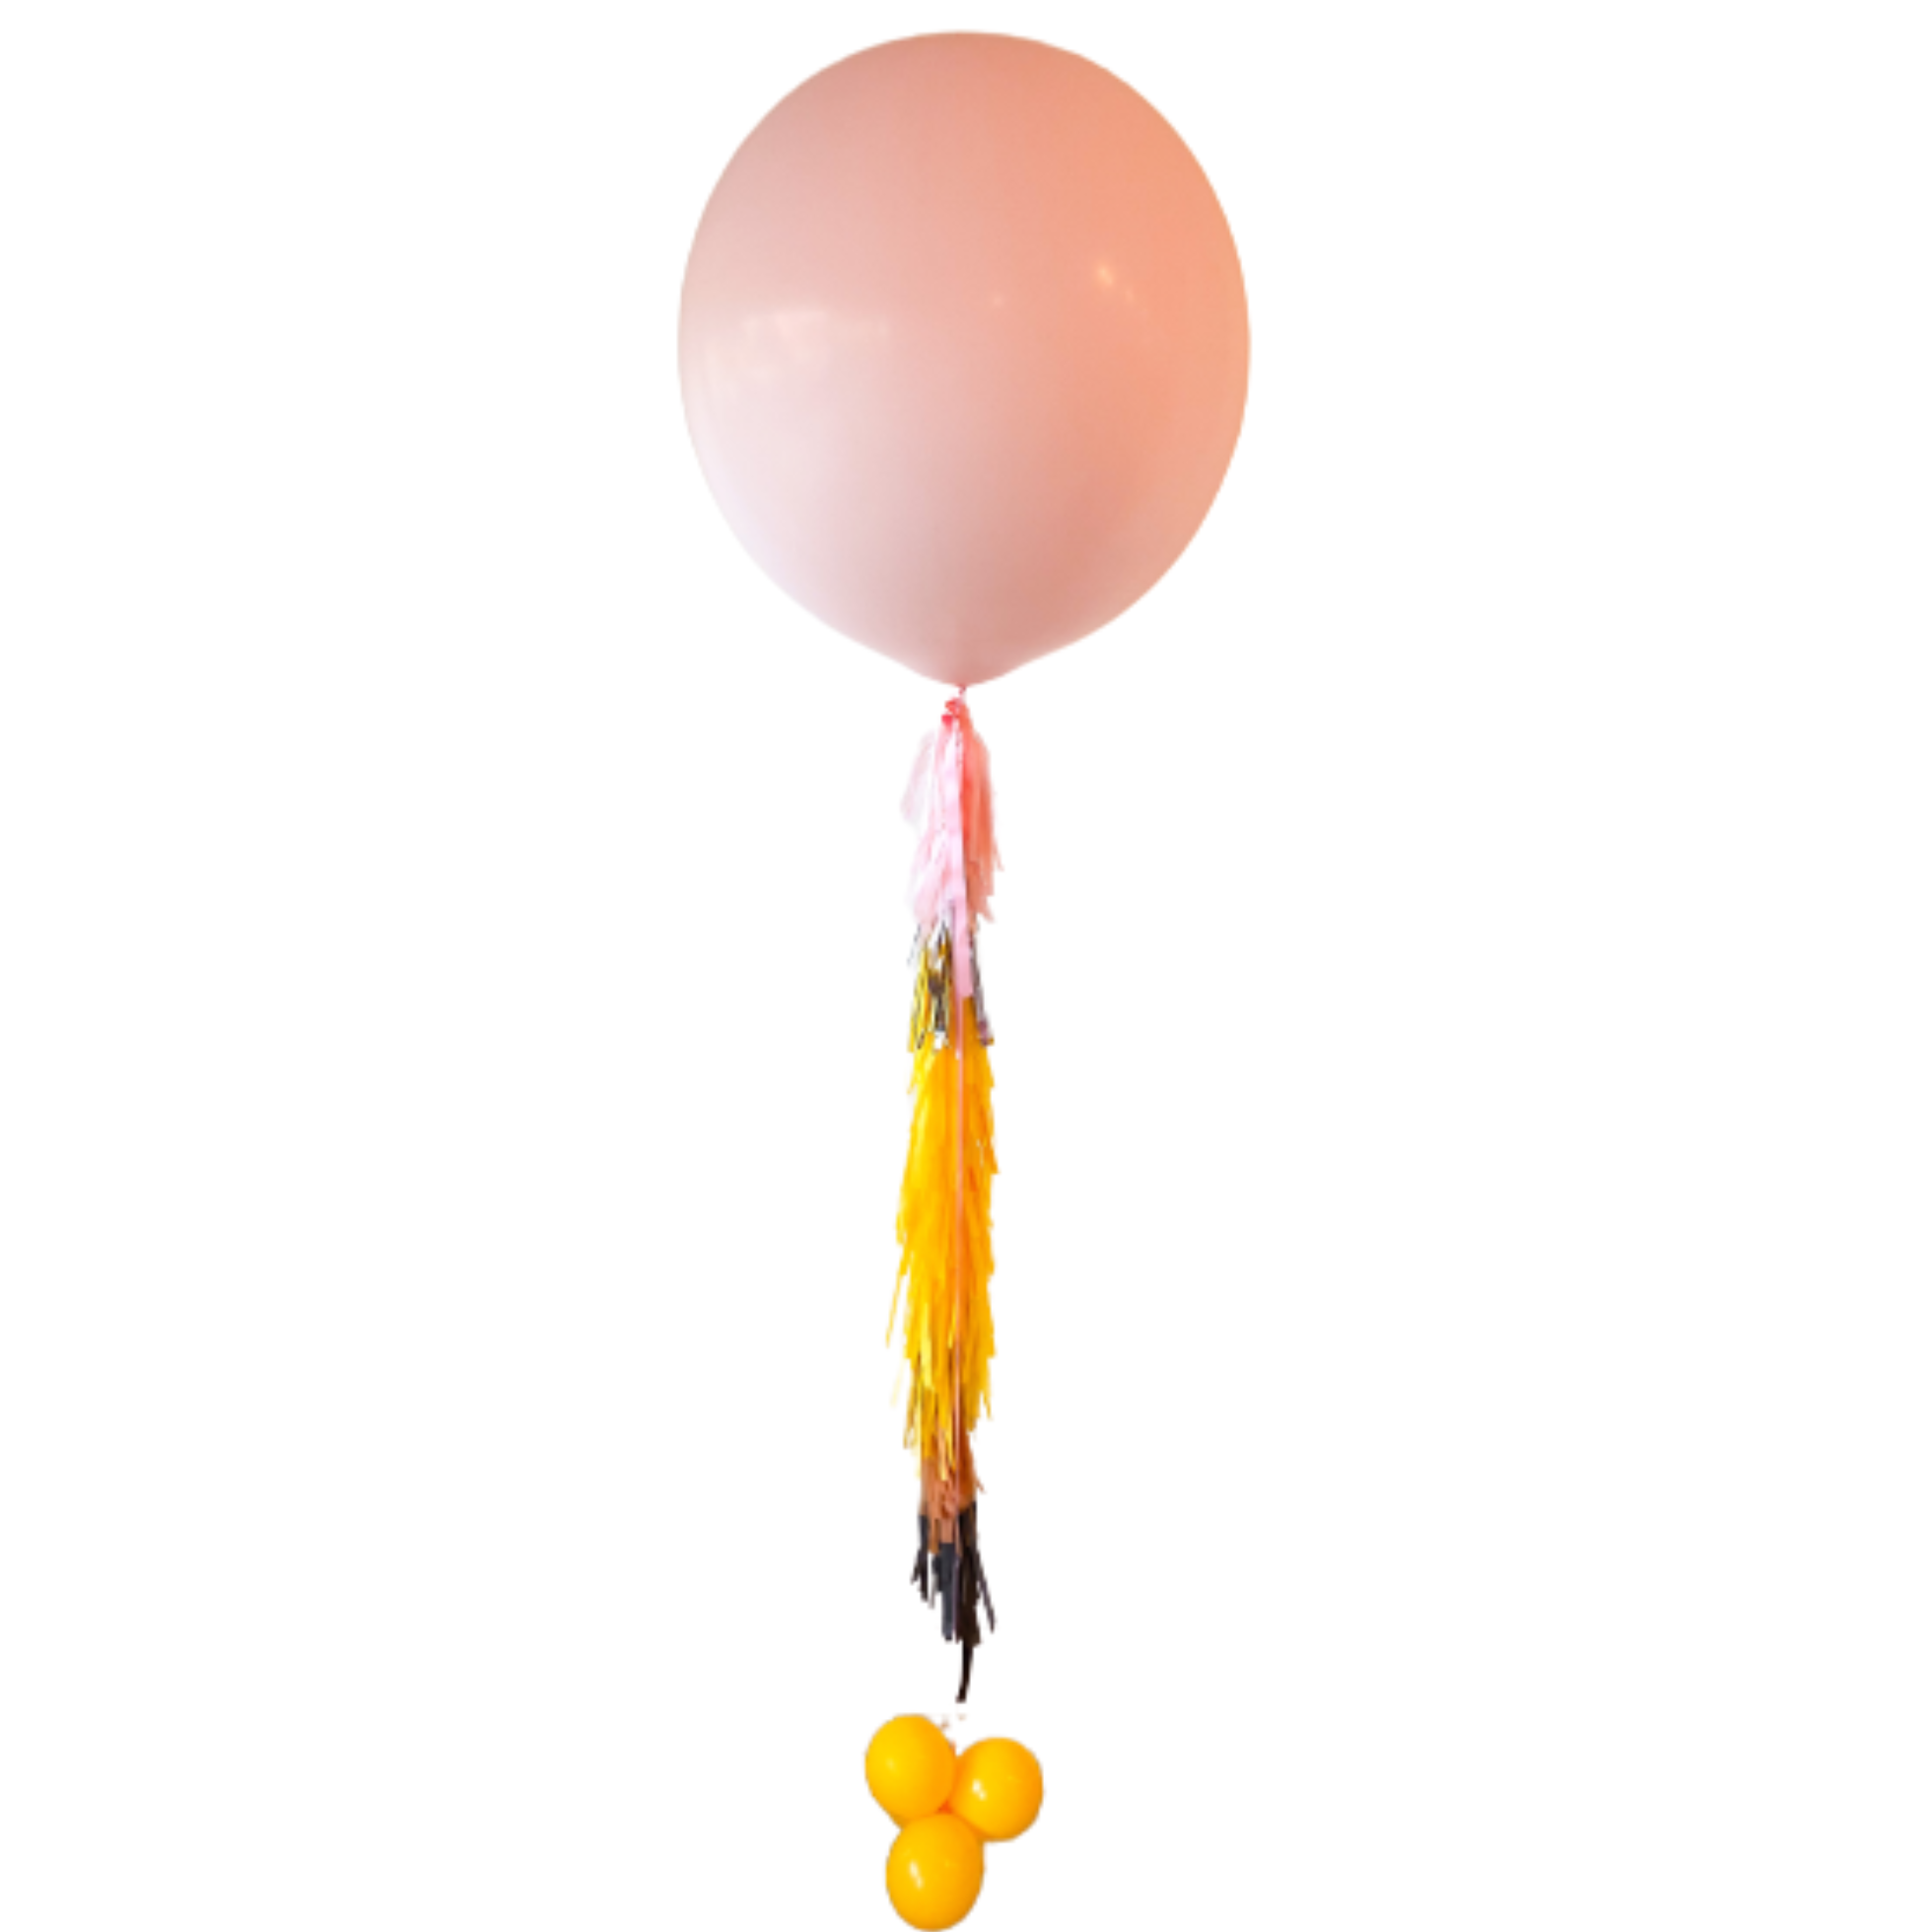 Balloon tassel tail 